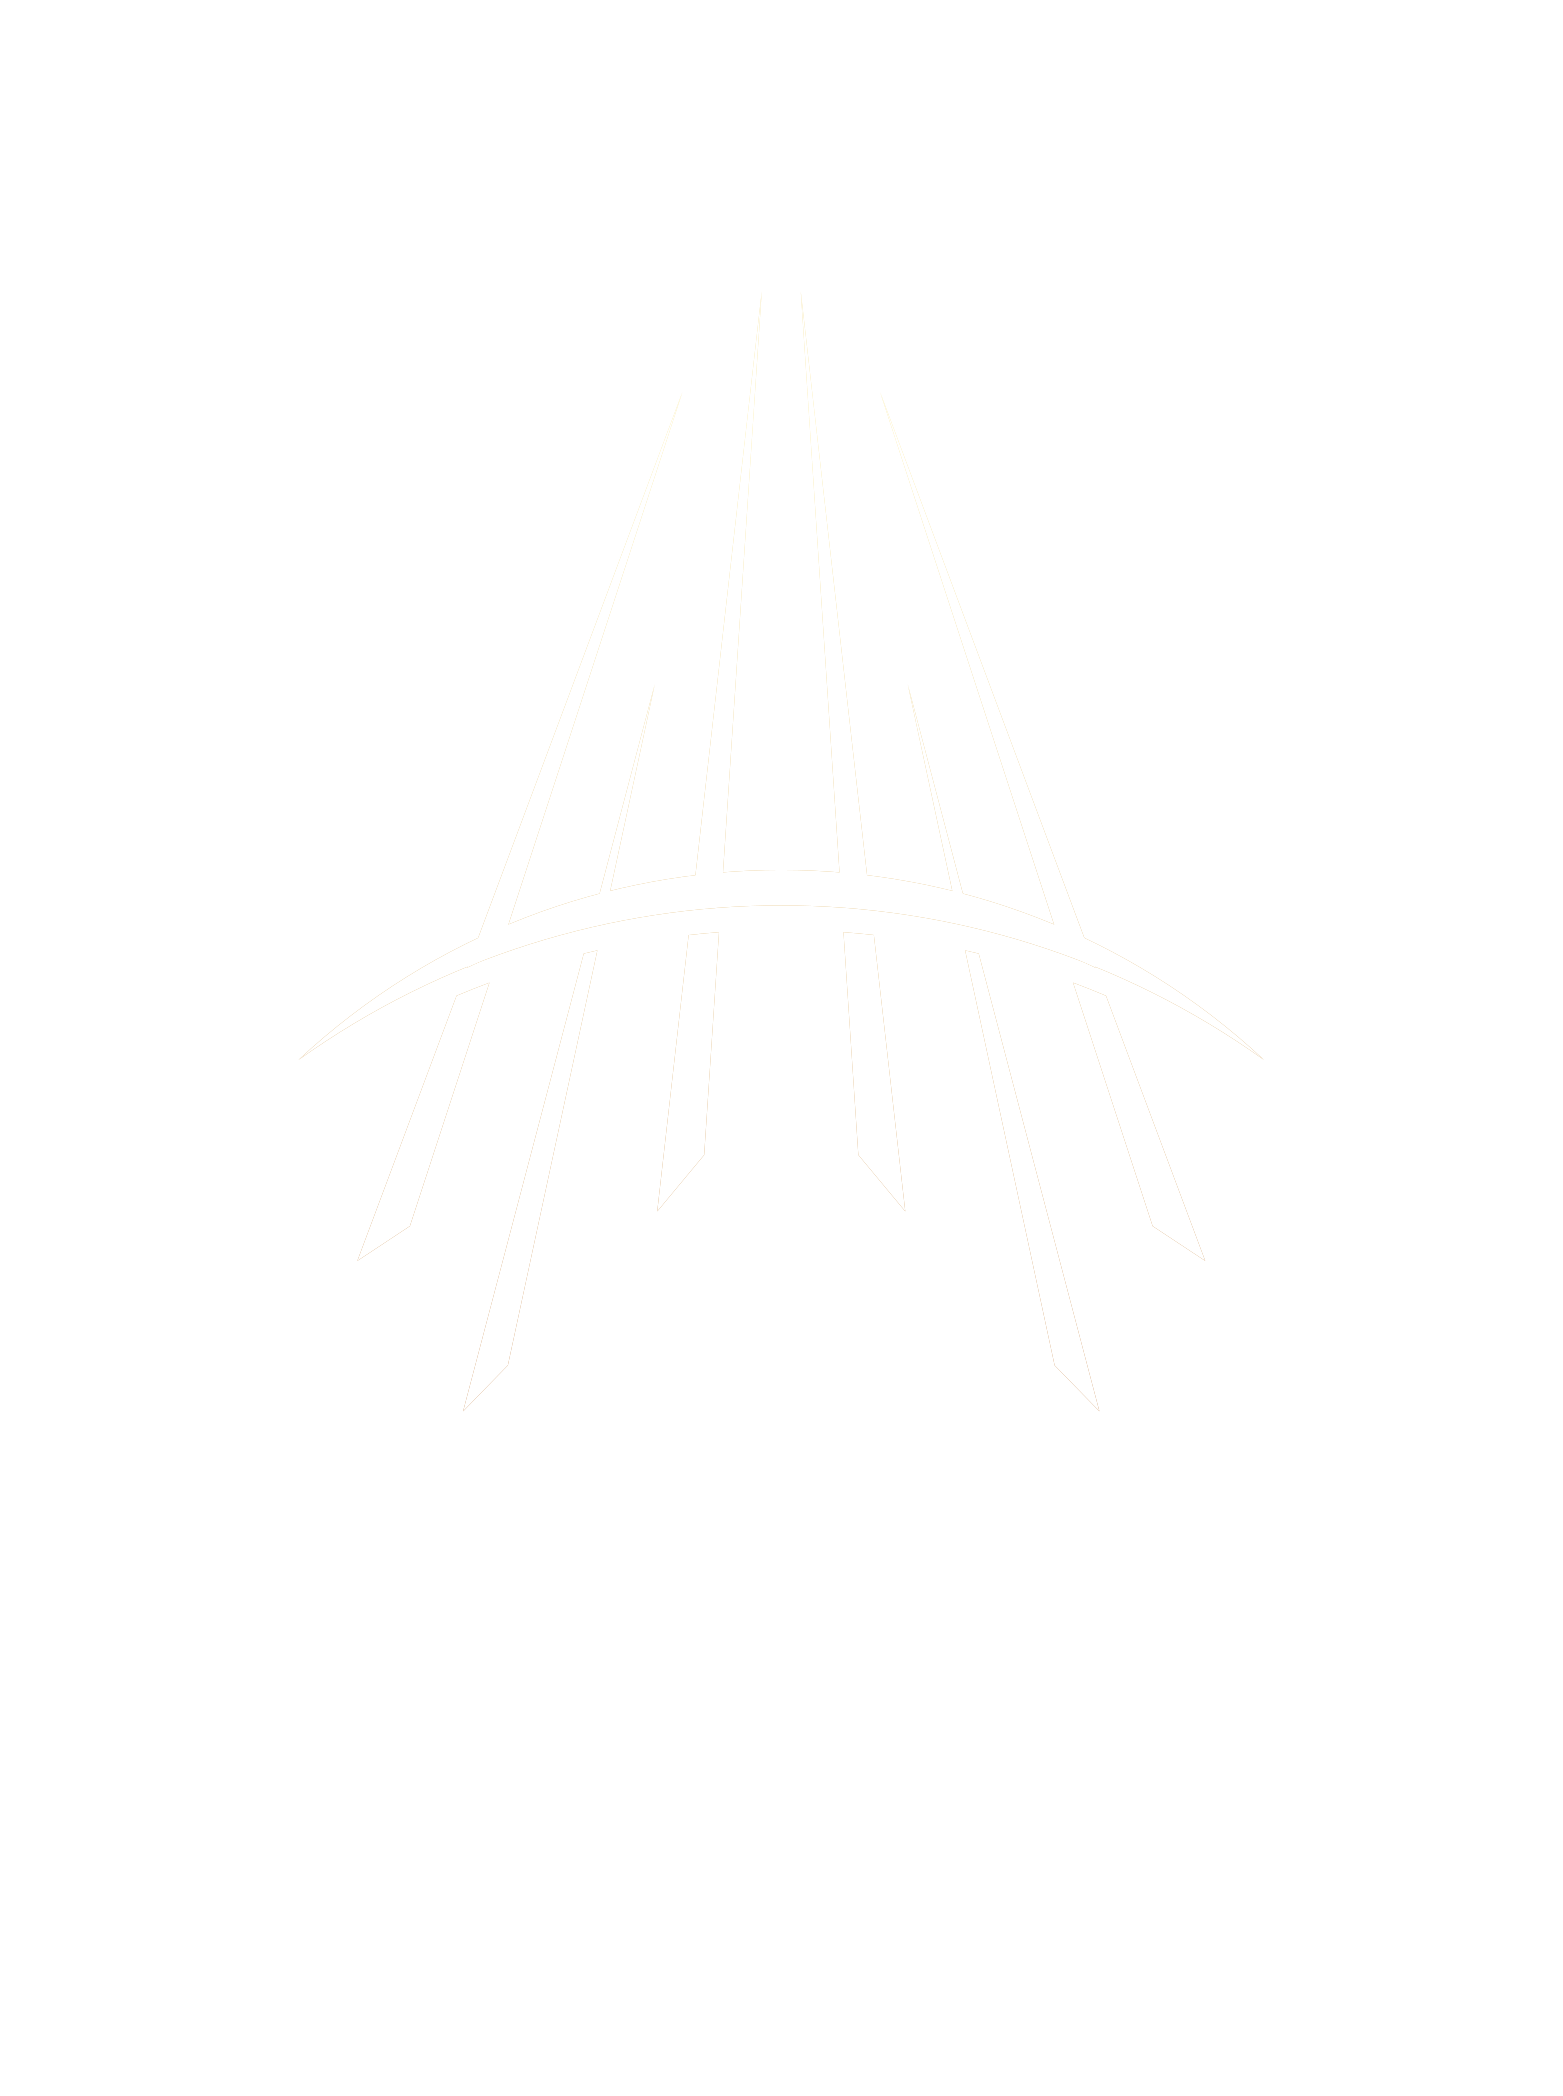 VMAKS T Logo